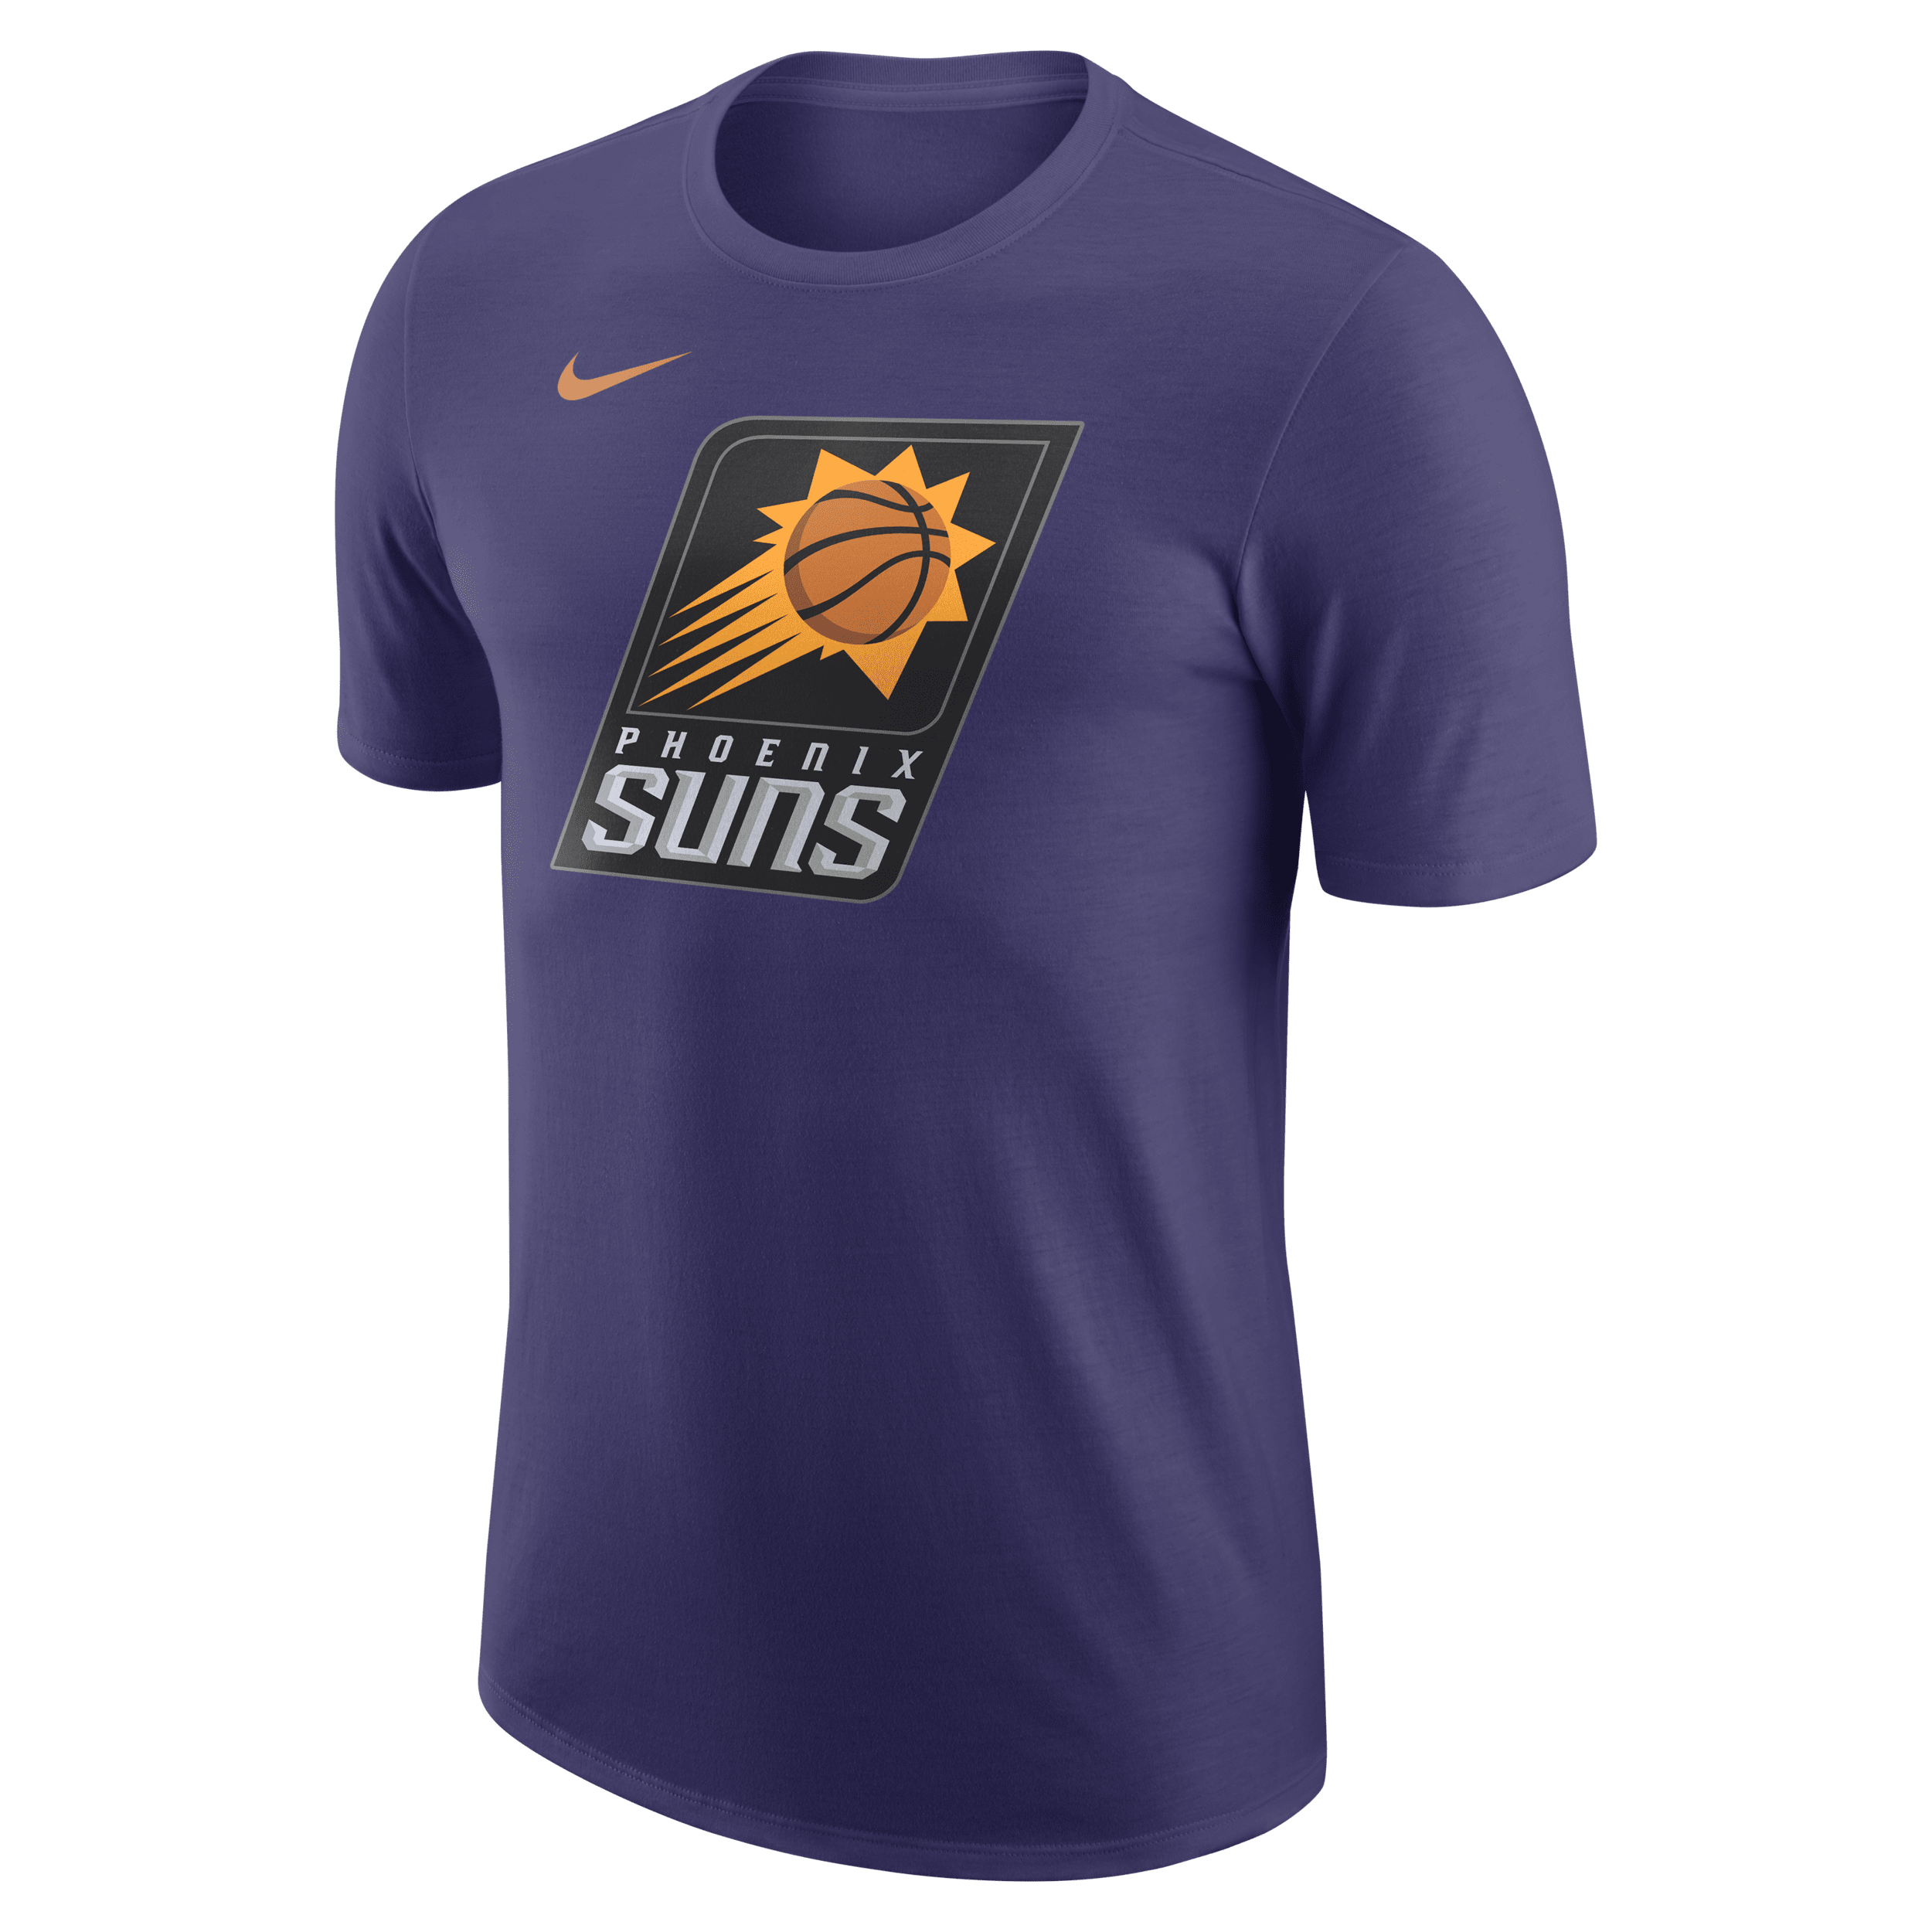 Camiseta Nike Phoenix Suns Masculina